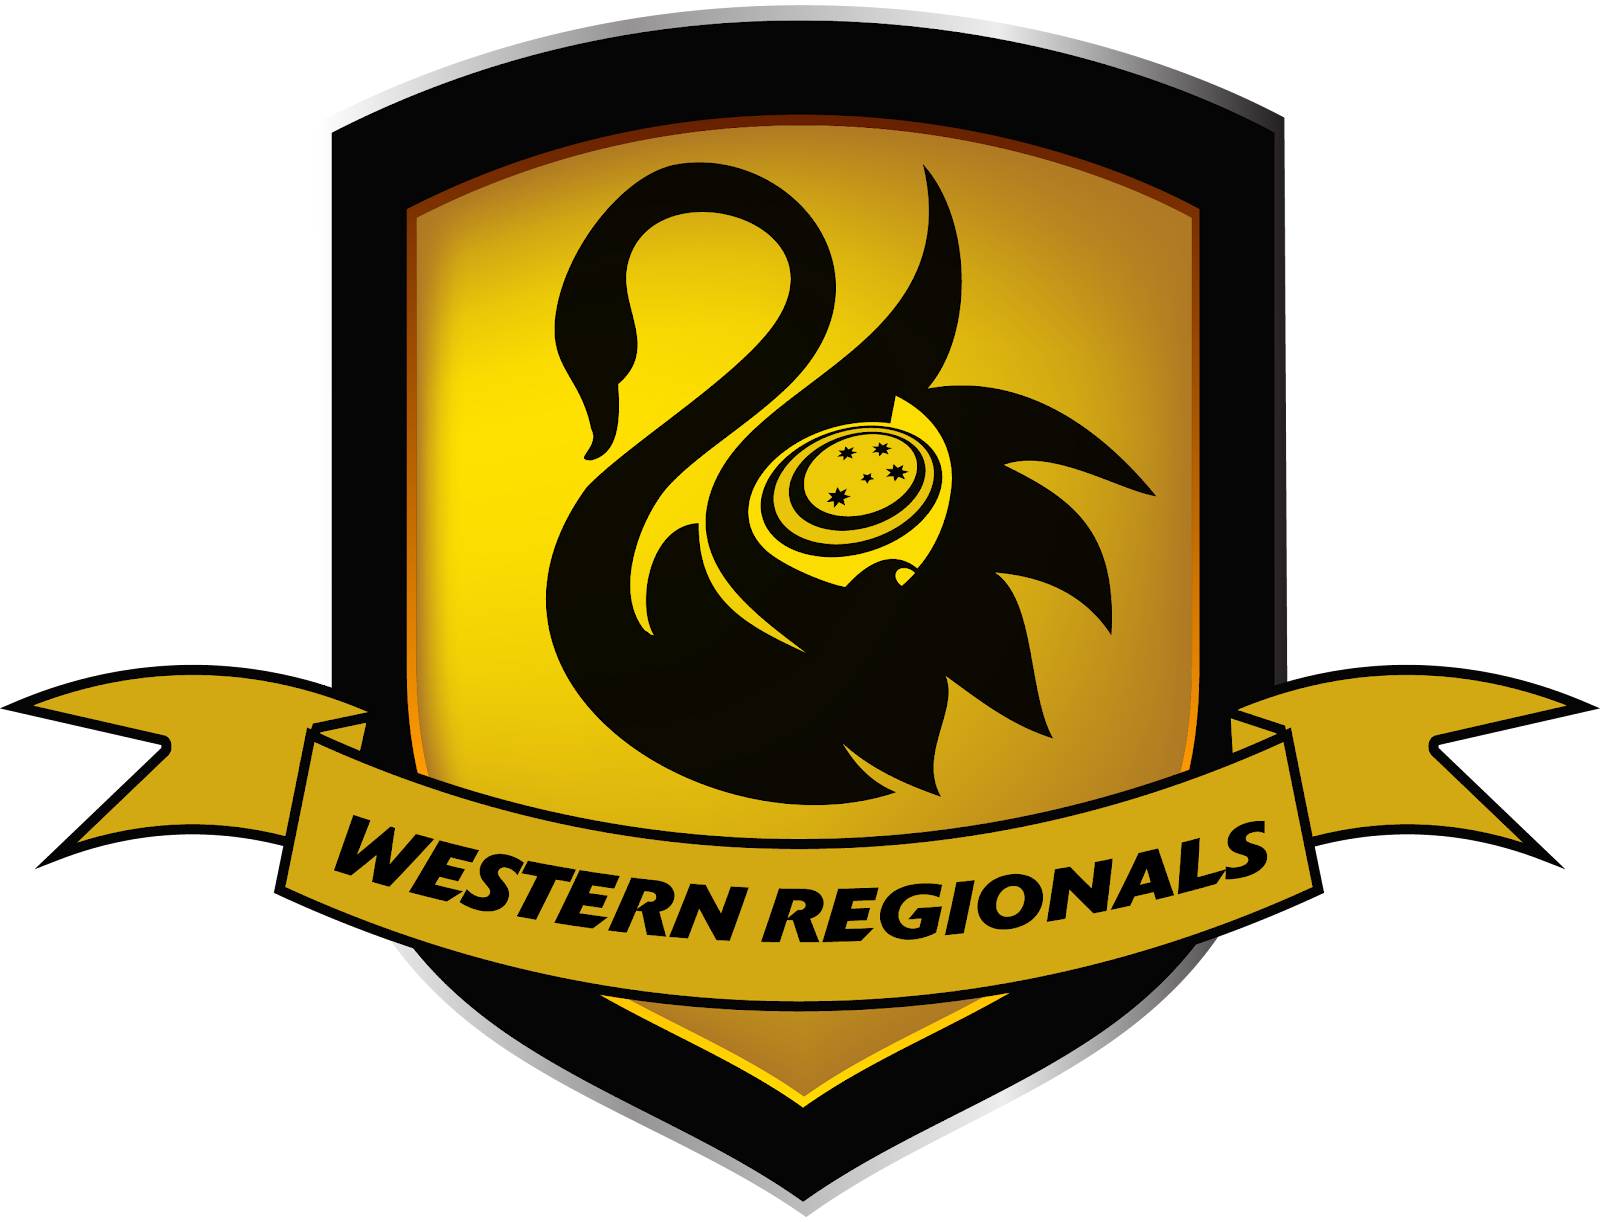 Western Regionals